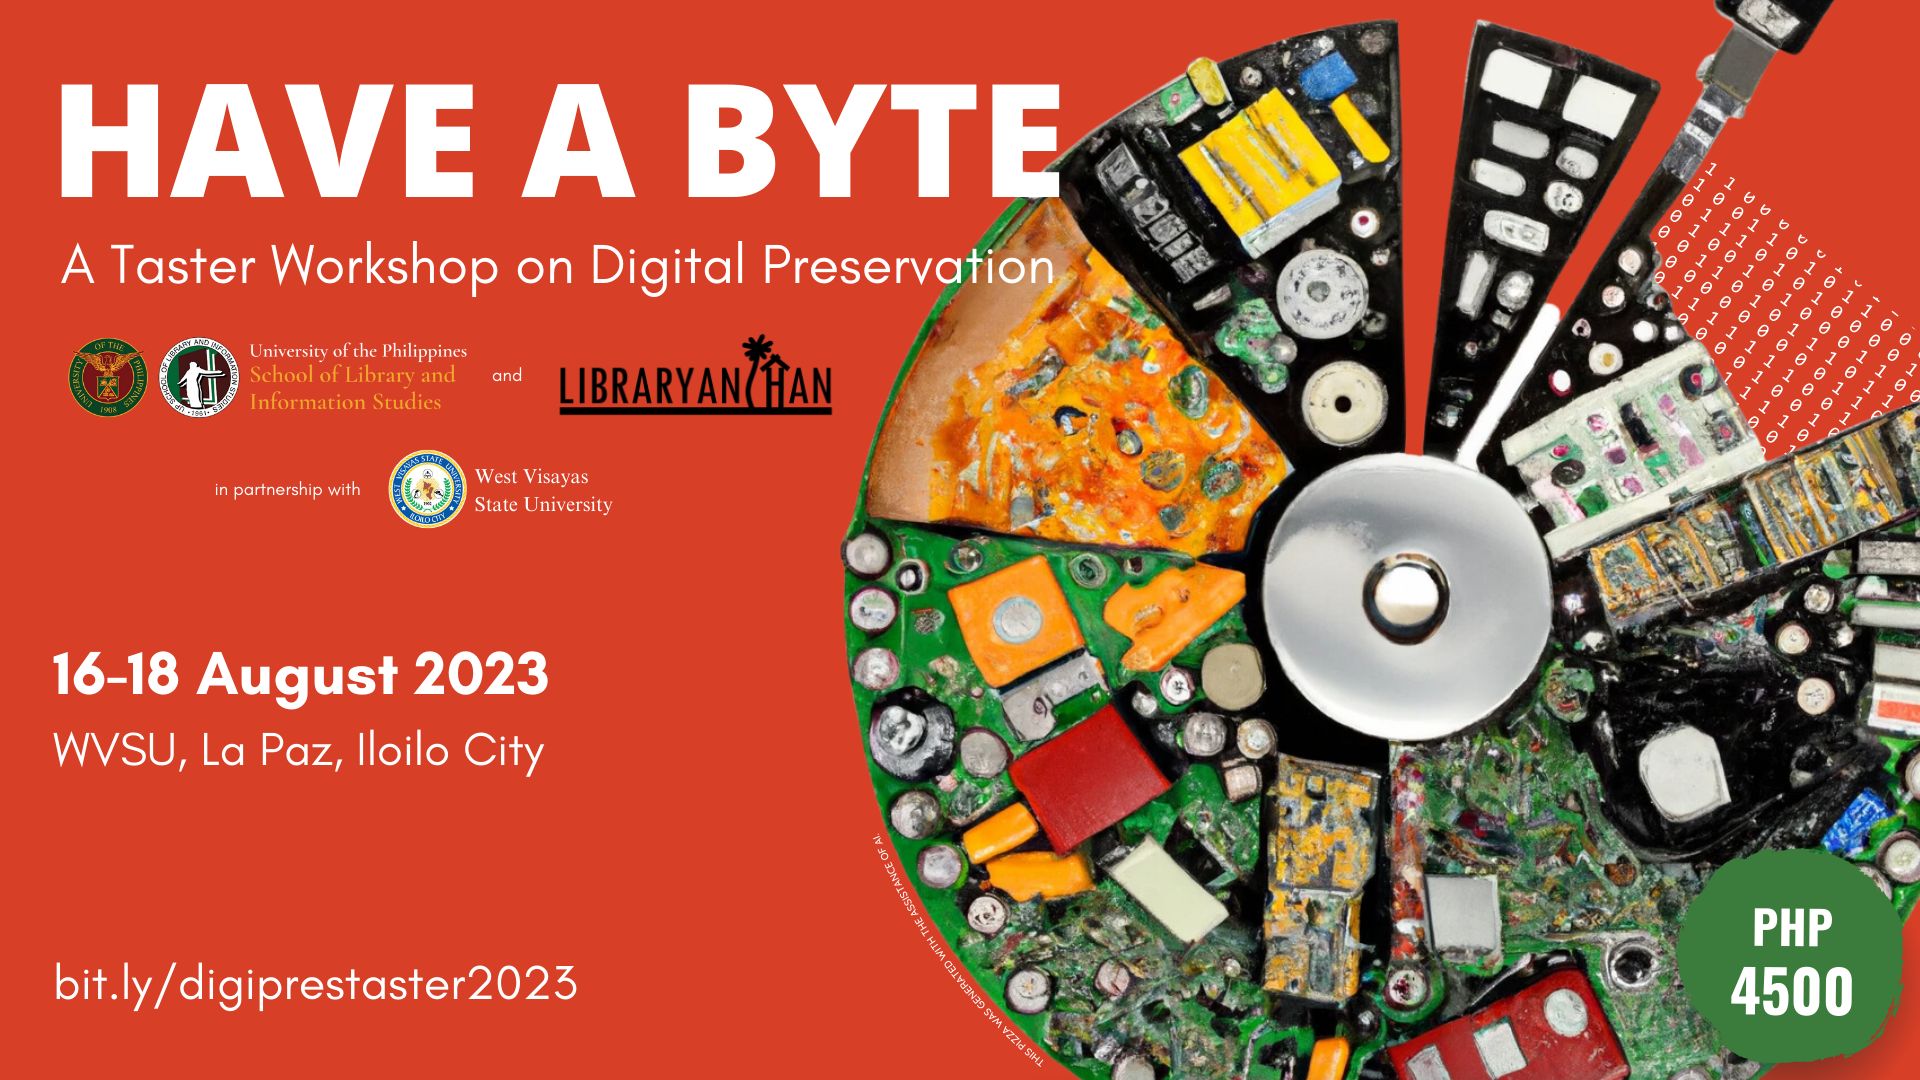 Have a Byte: A Taster Workshop on Digital Preservation for Visayas